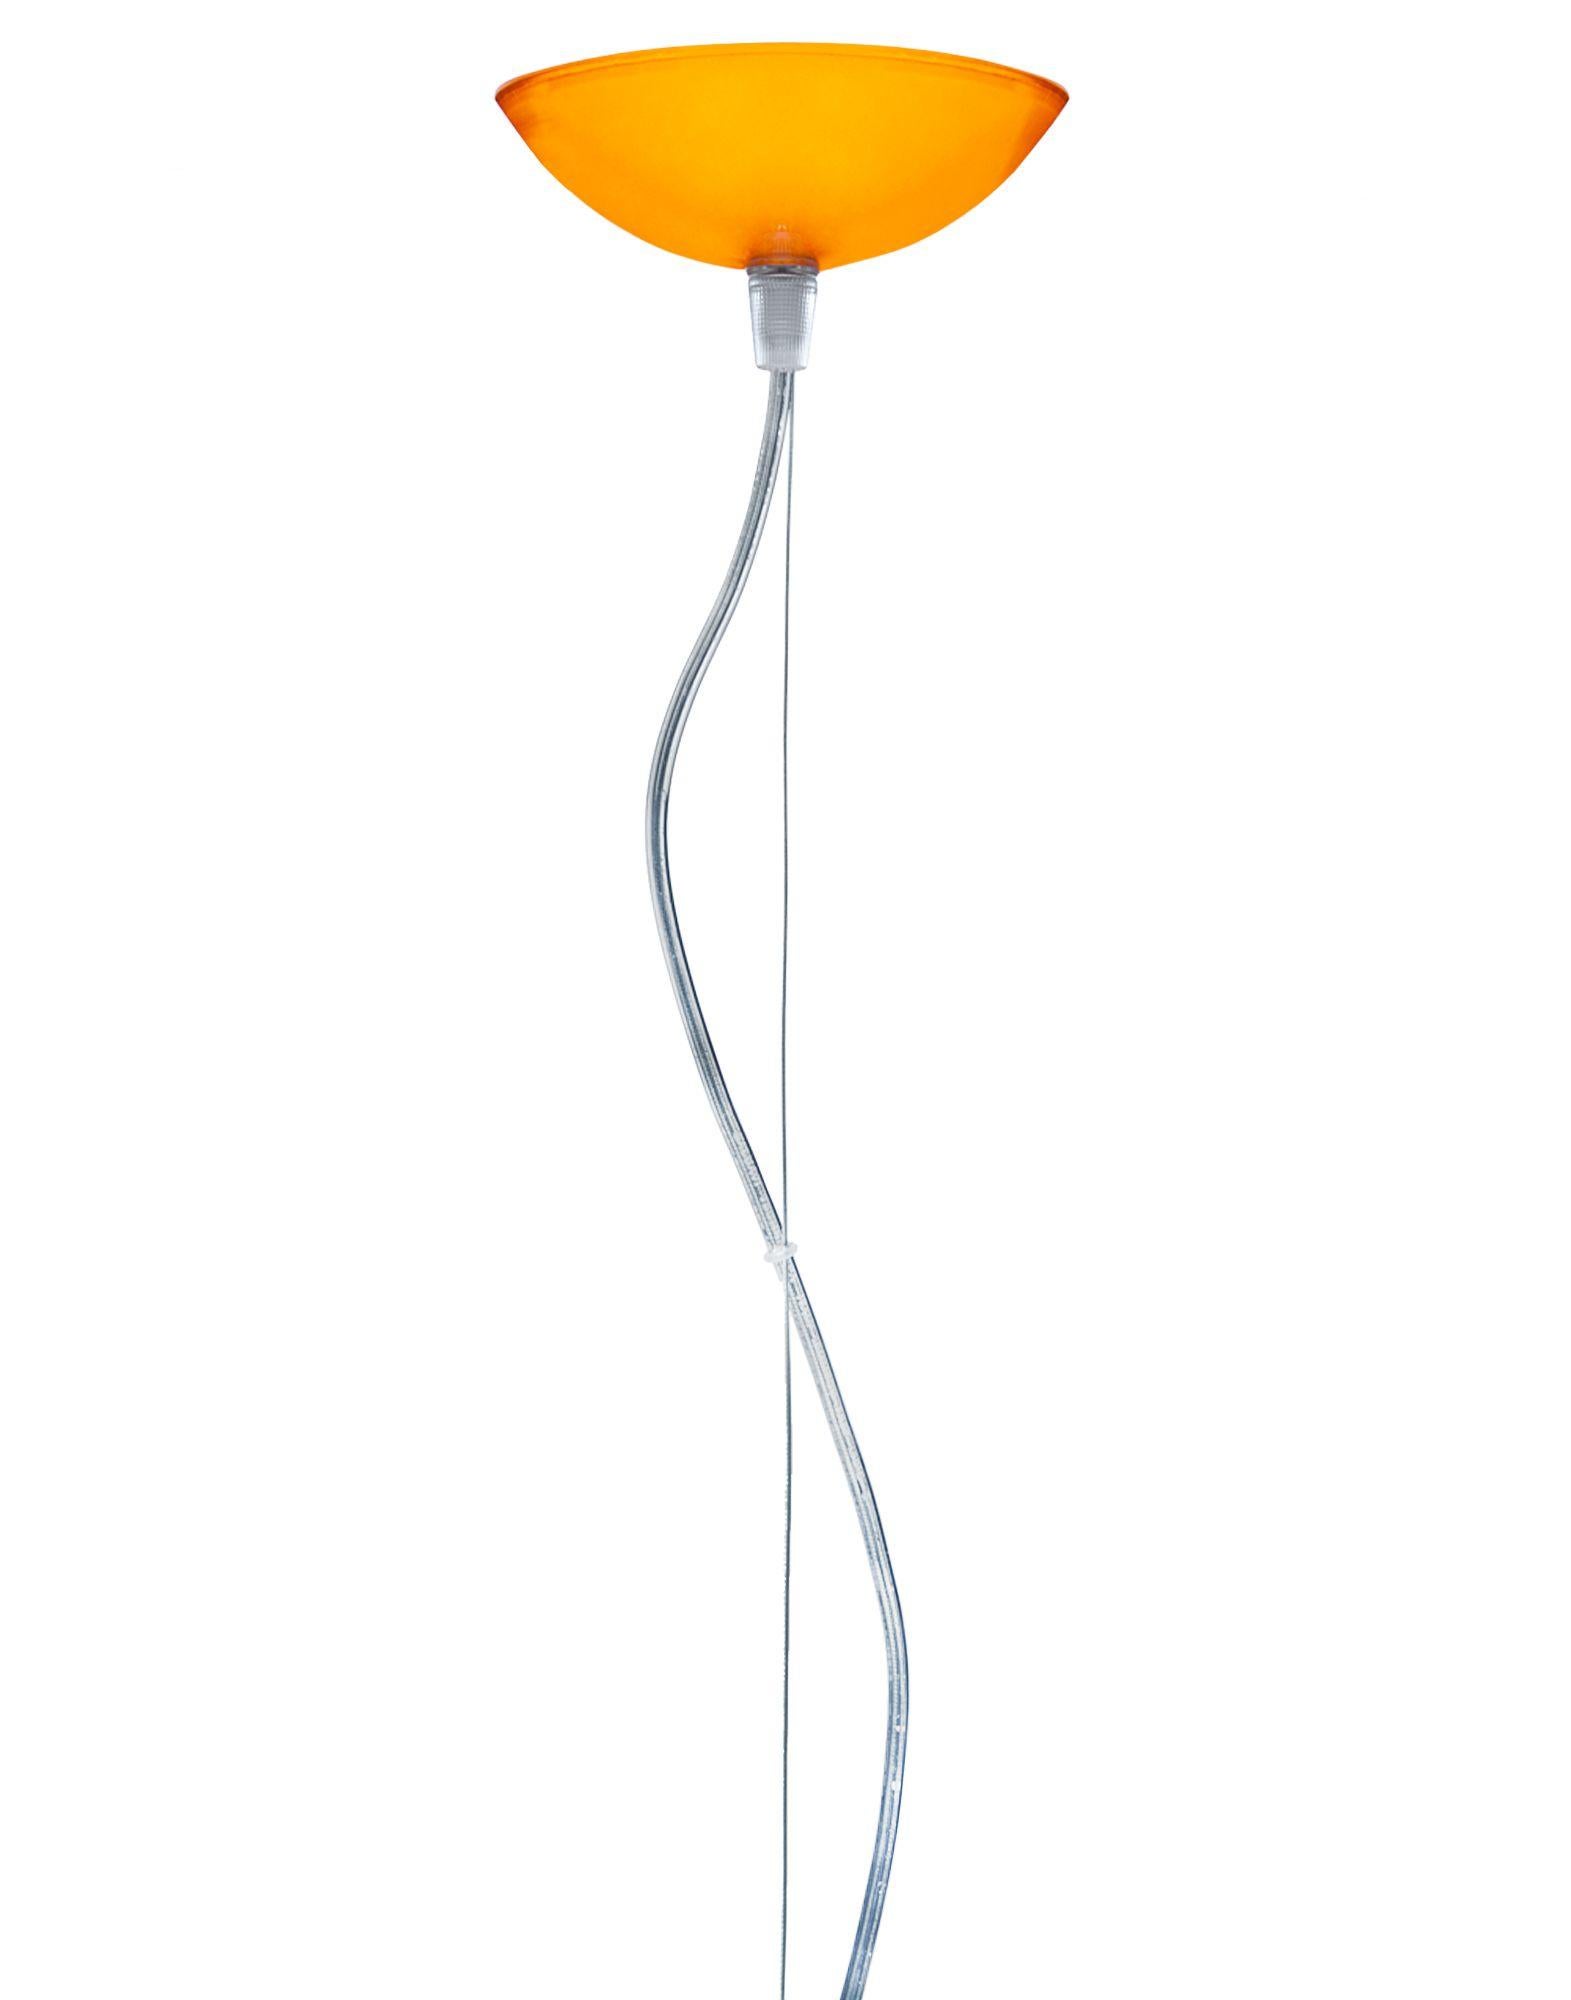 FL/Y Pendelleuchte klein in orange. Es handelt sich um eine von Ferruccio Laviani im Jahr 2002 entworfene Kollektion von Pendelleuchten.

Abmessungen: Höhe des Schirms: 11 Zoll; Durchmesser: 15 Zoll; Gewicht der Einheit: 1,08 kg. Hergestellt aus: